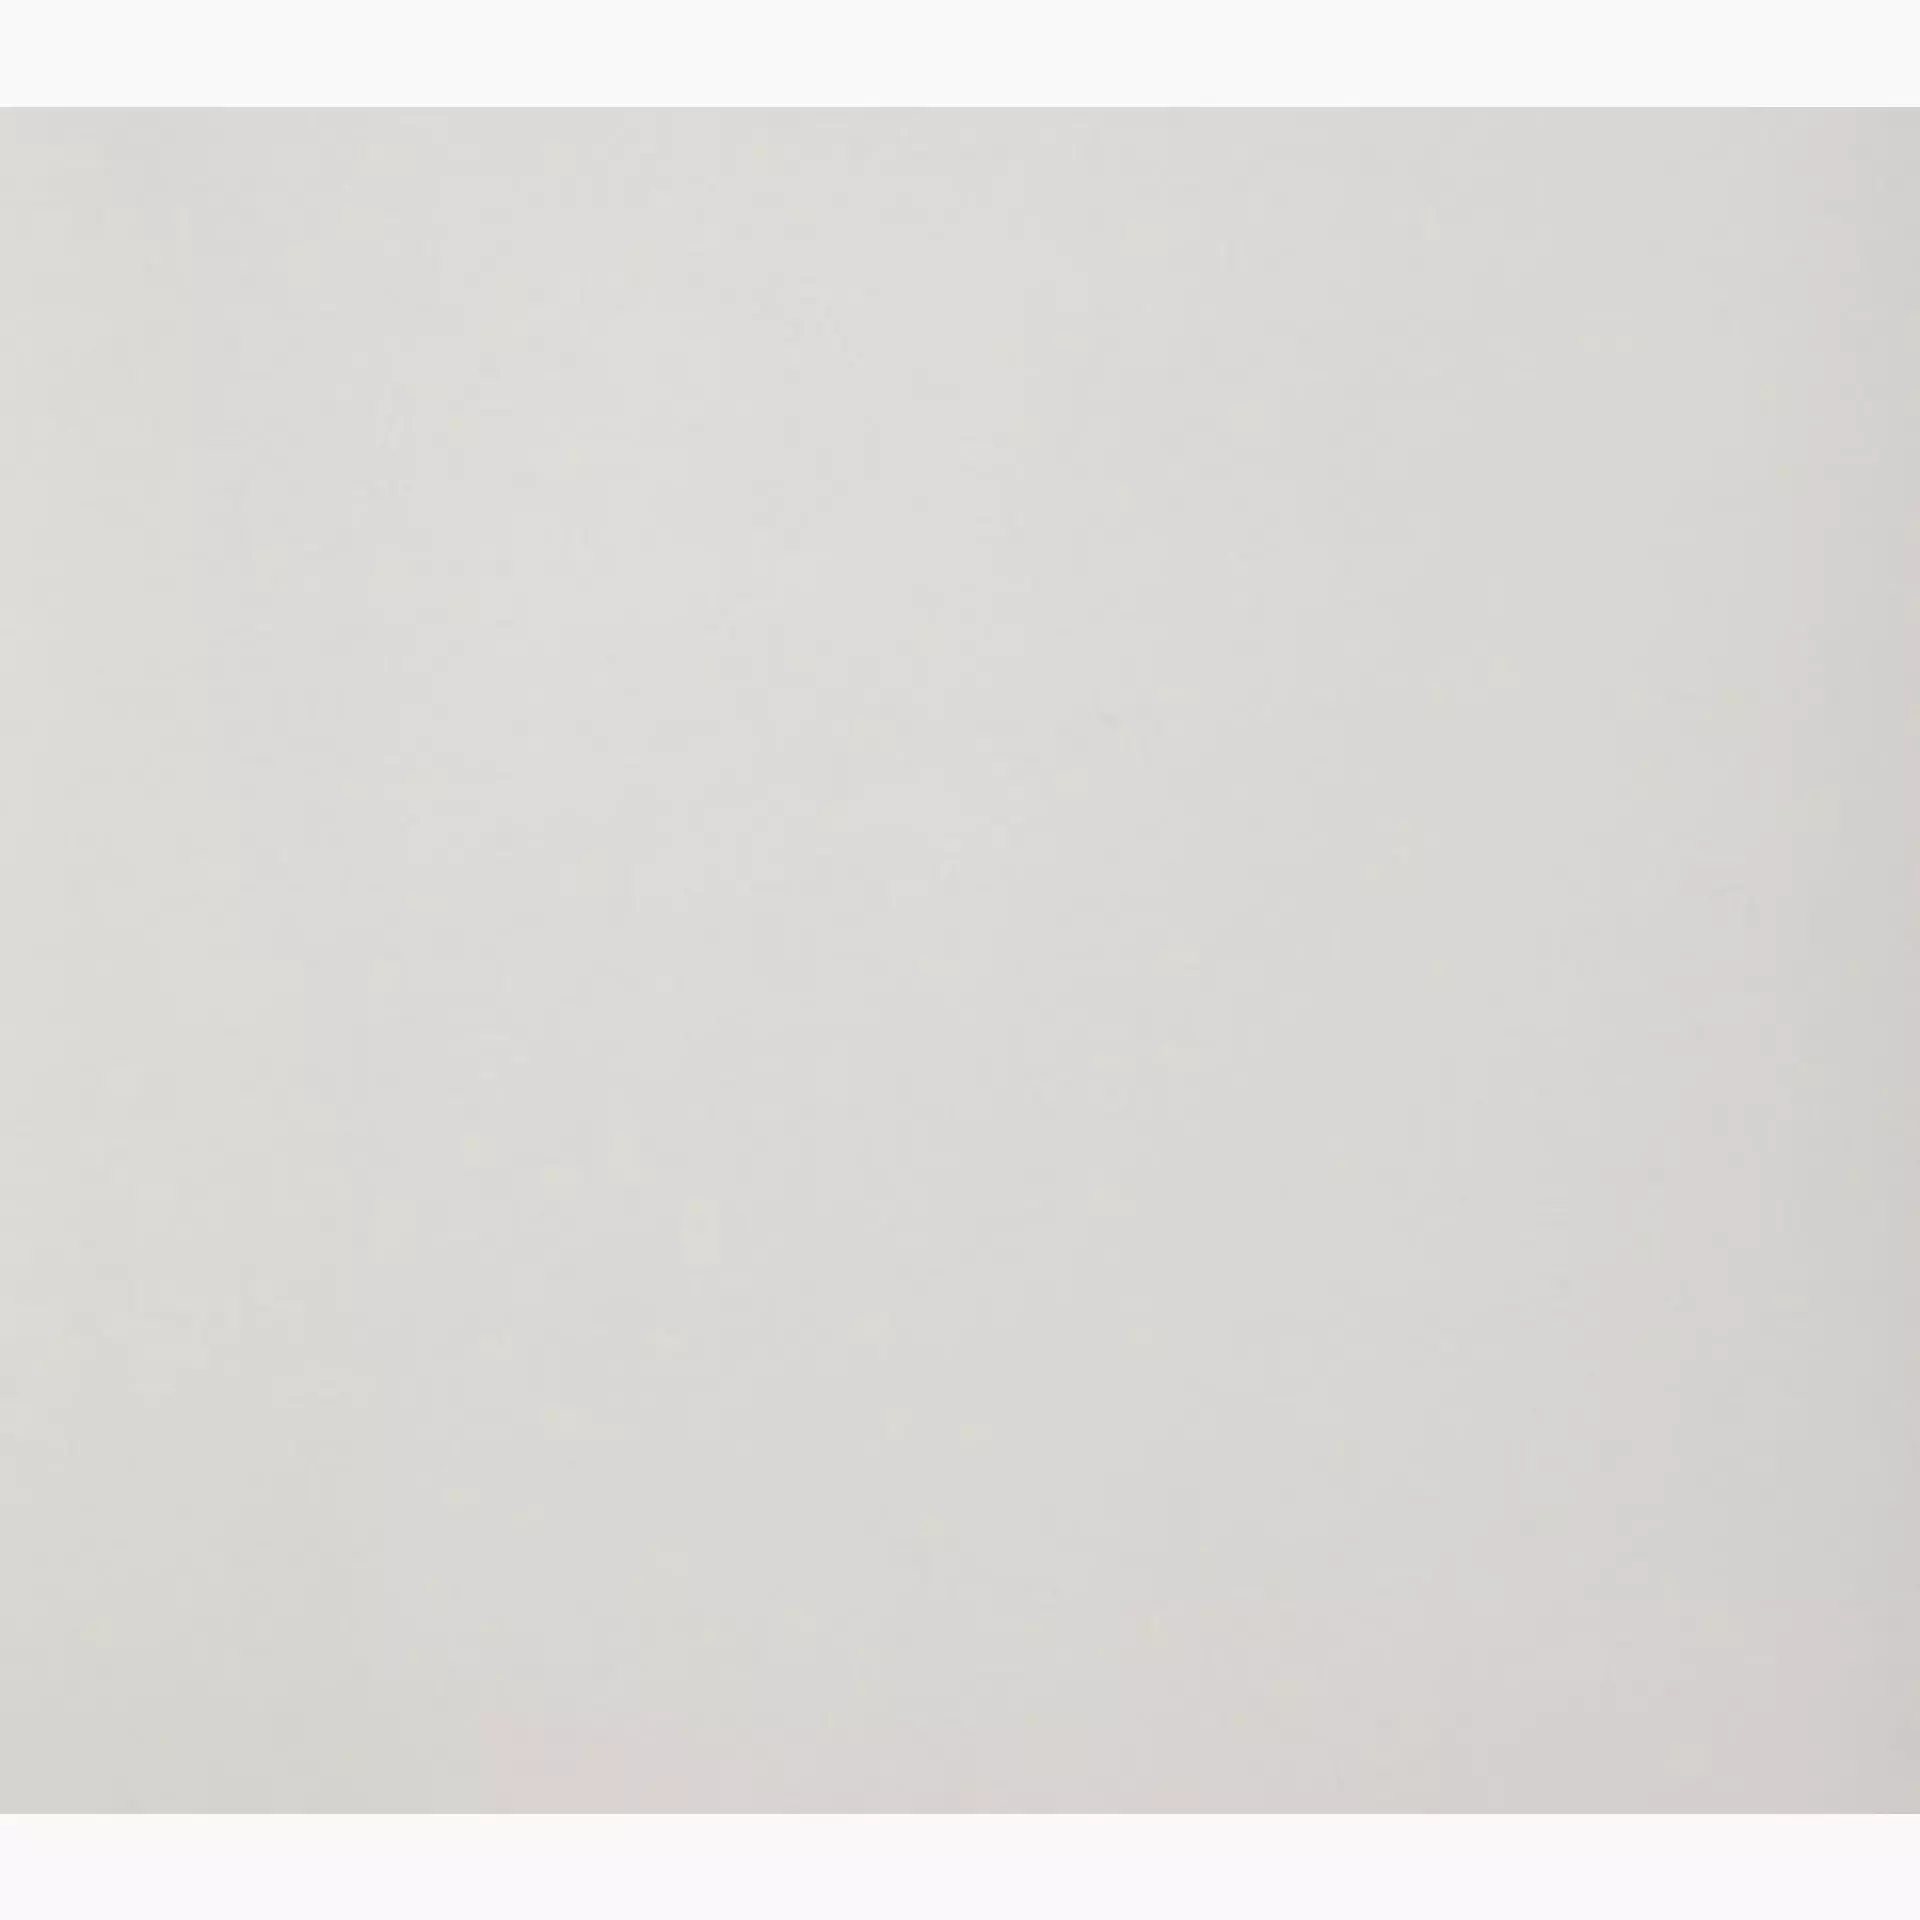 Casalgrande Architecture Warm Grey Naturale – Matt 4700047 30x30cm rectified 9,4mm